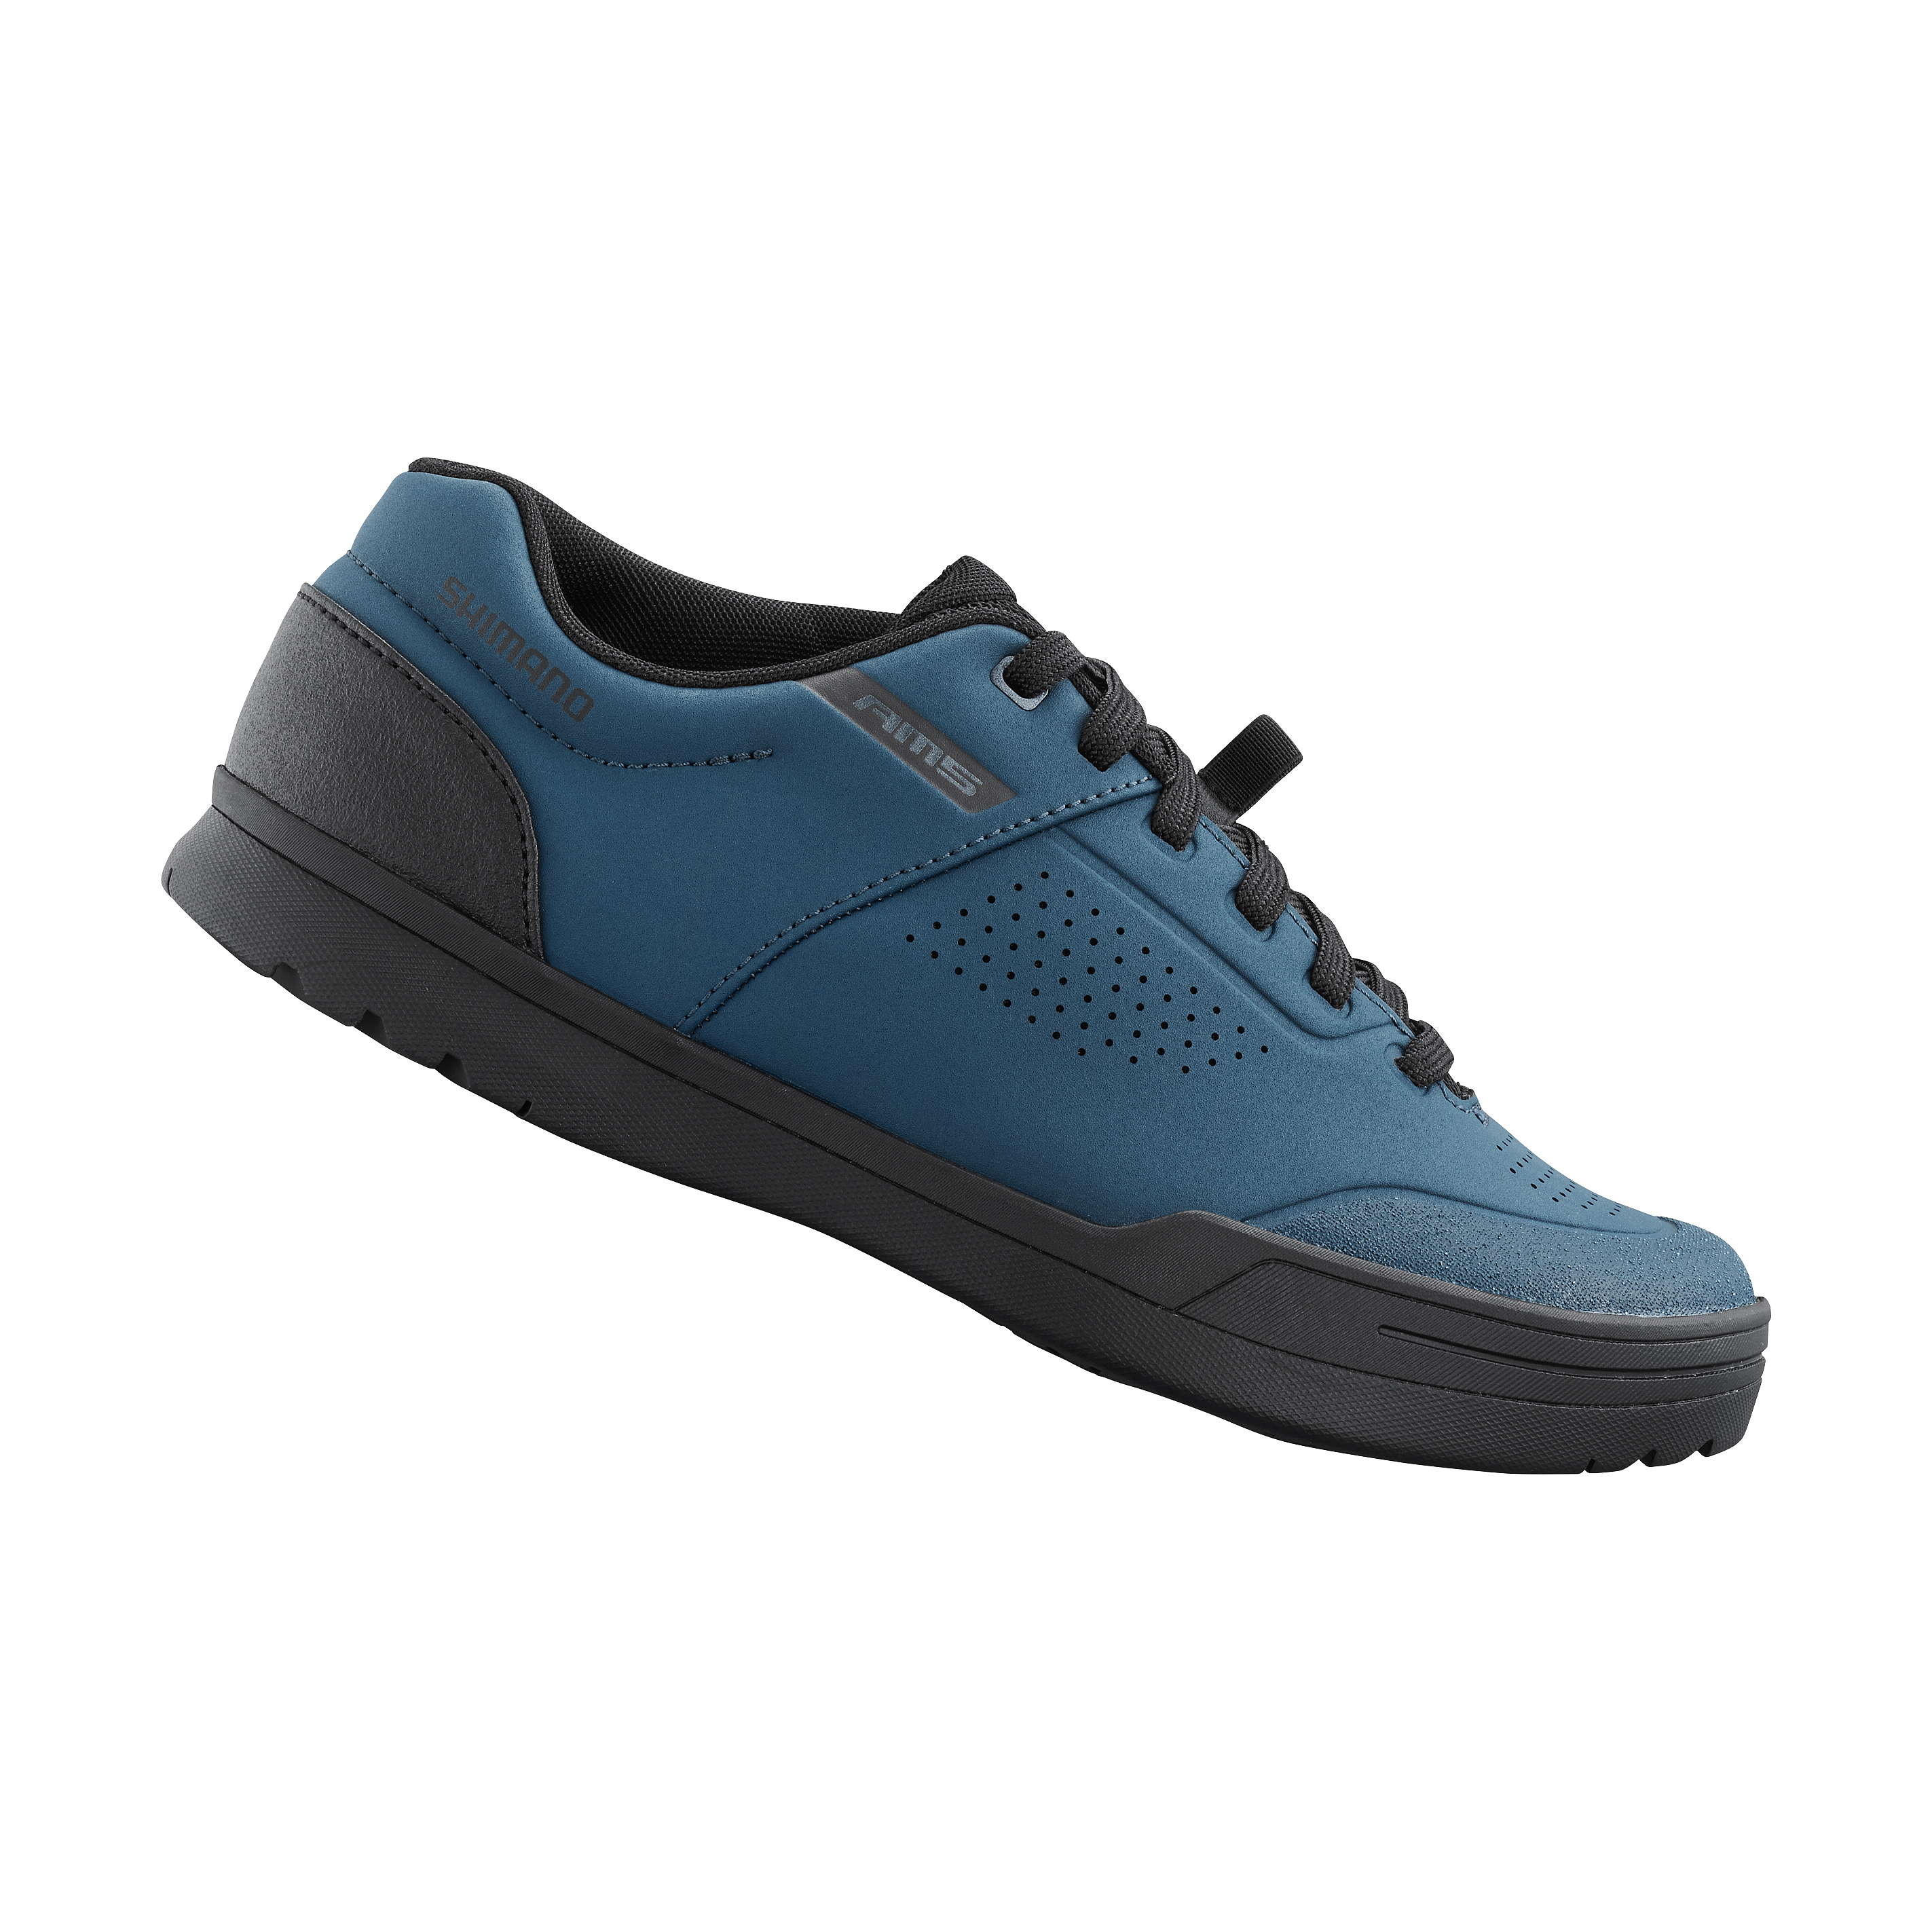 SHIMANO gravity obuv SH-AM503, dámská, modrá, 39